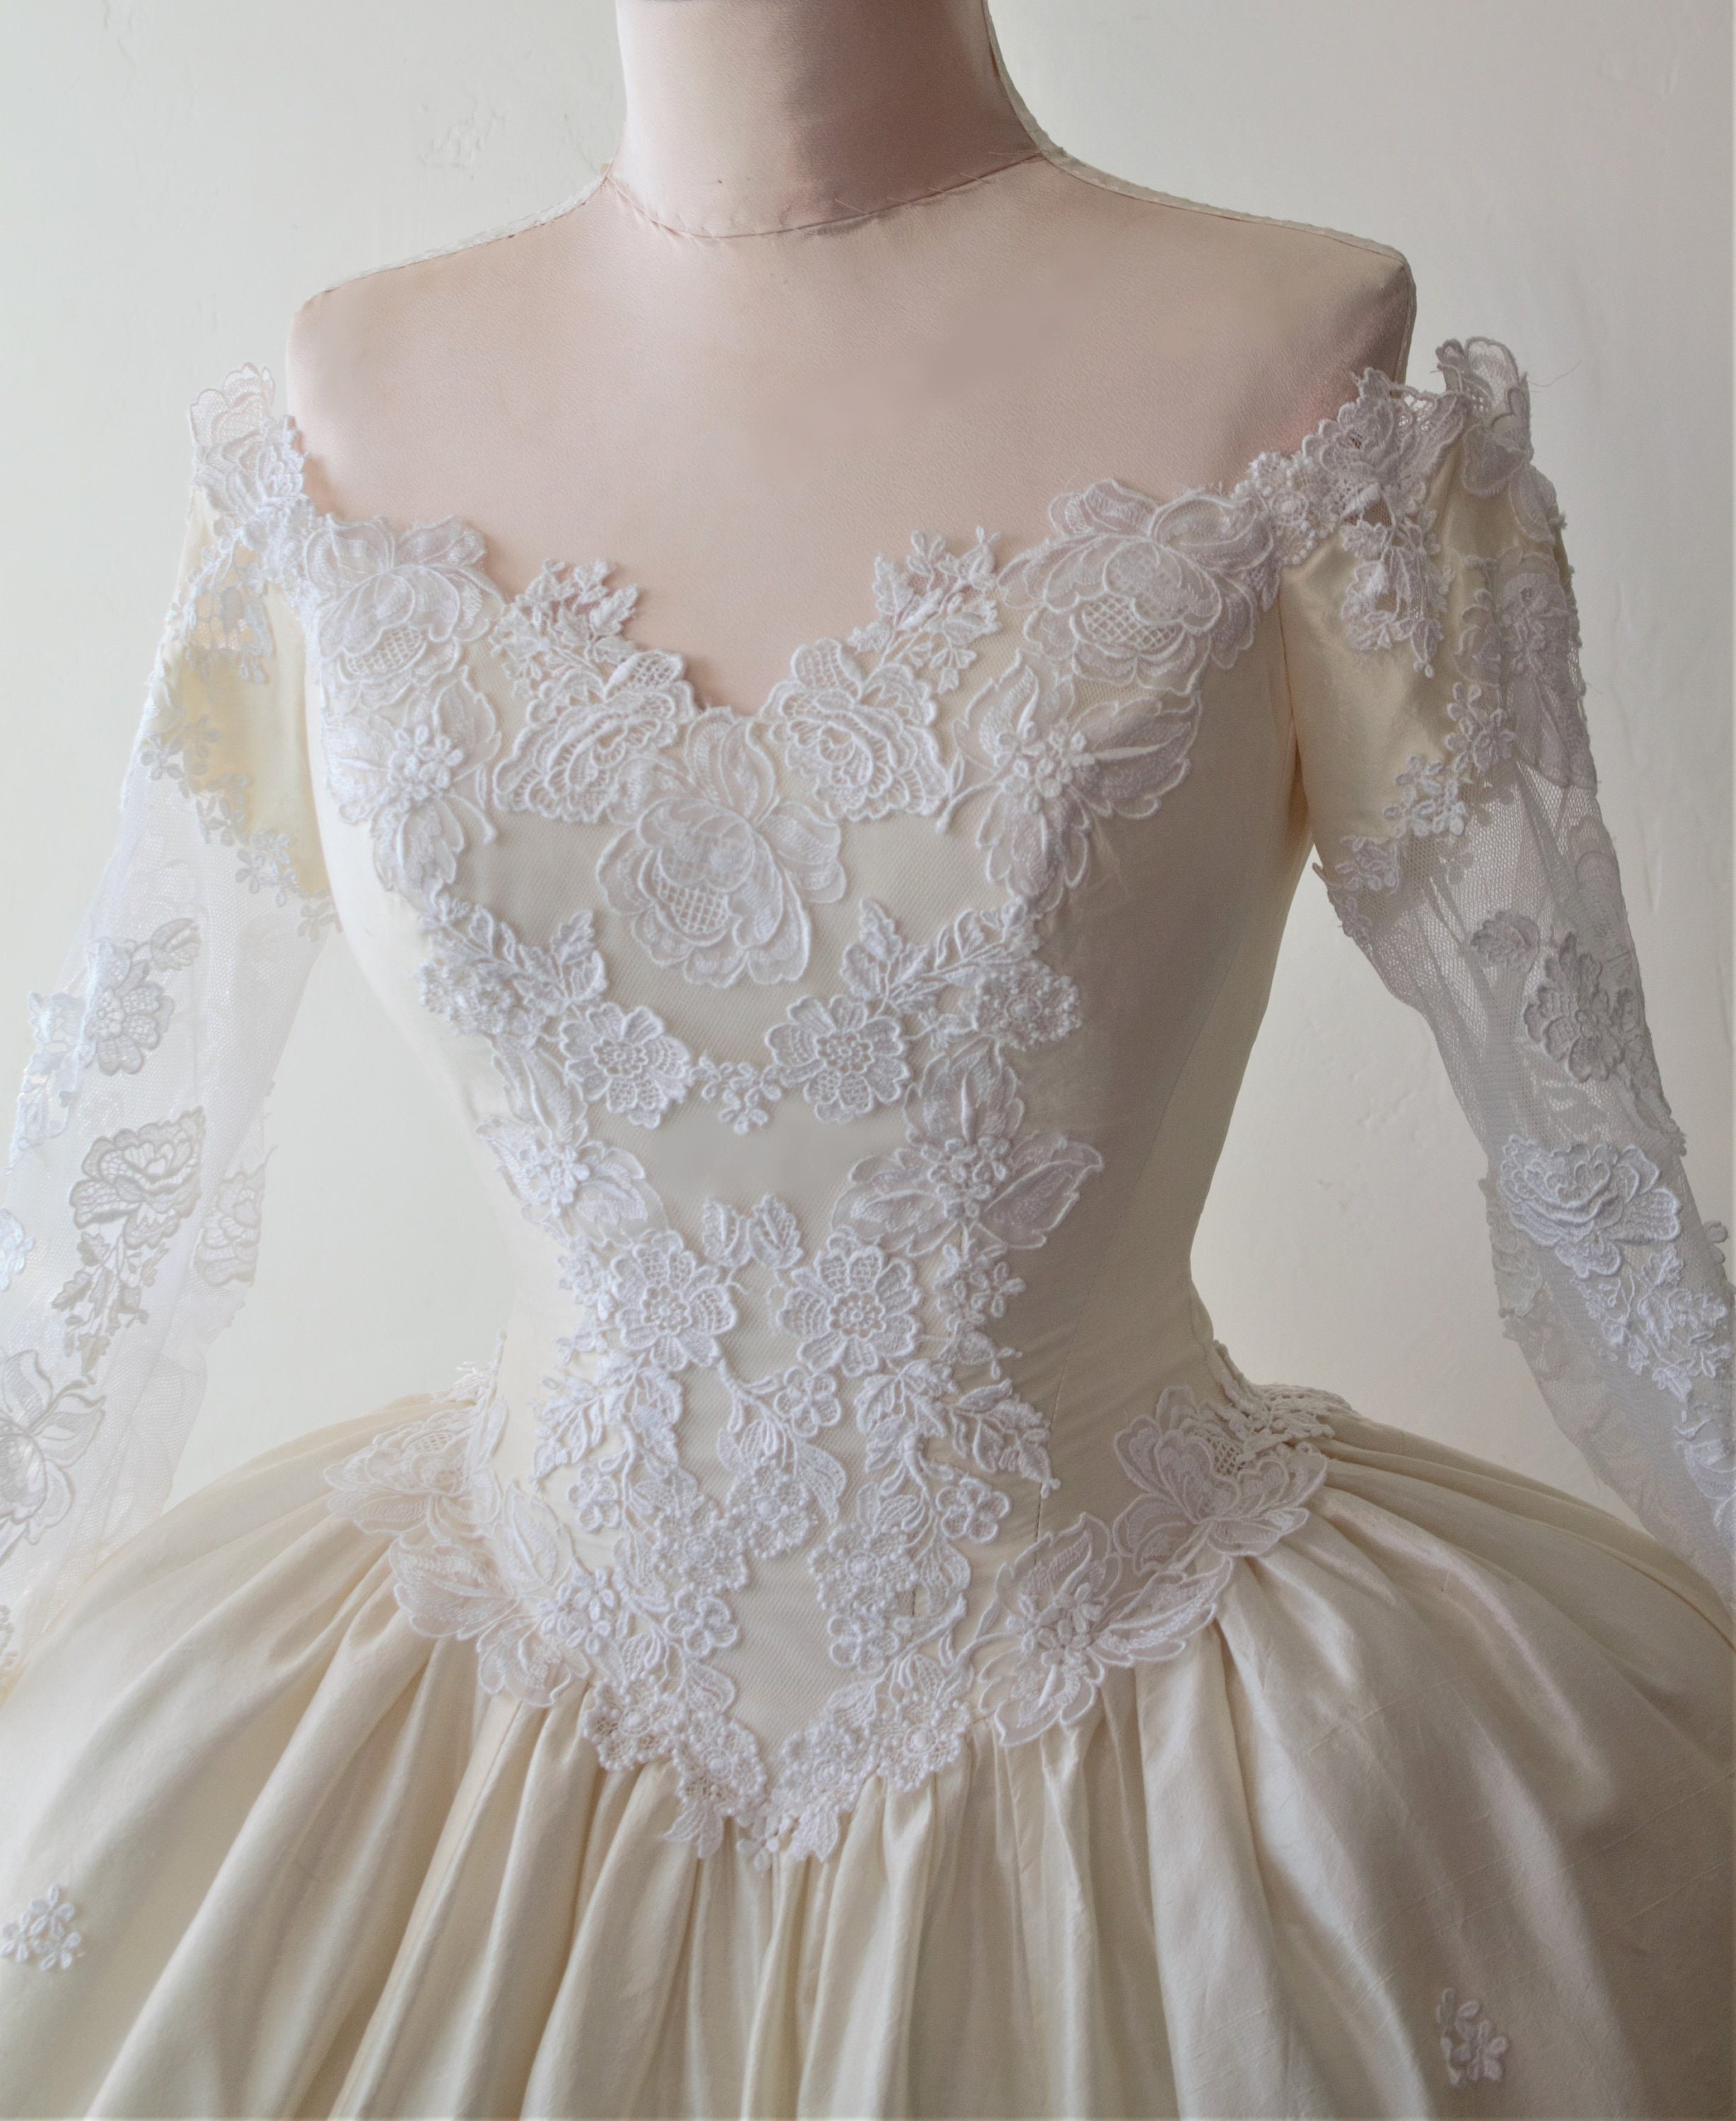 Marie Antoinette Wedding Dress Ball Gown Cream Silk | Etsy